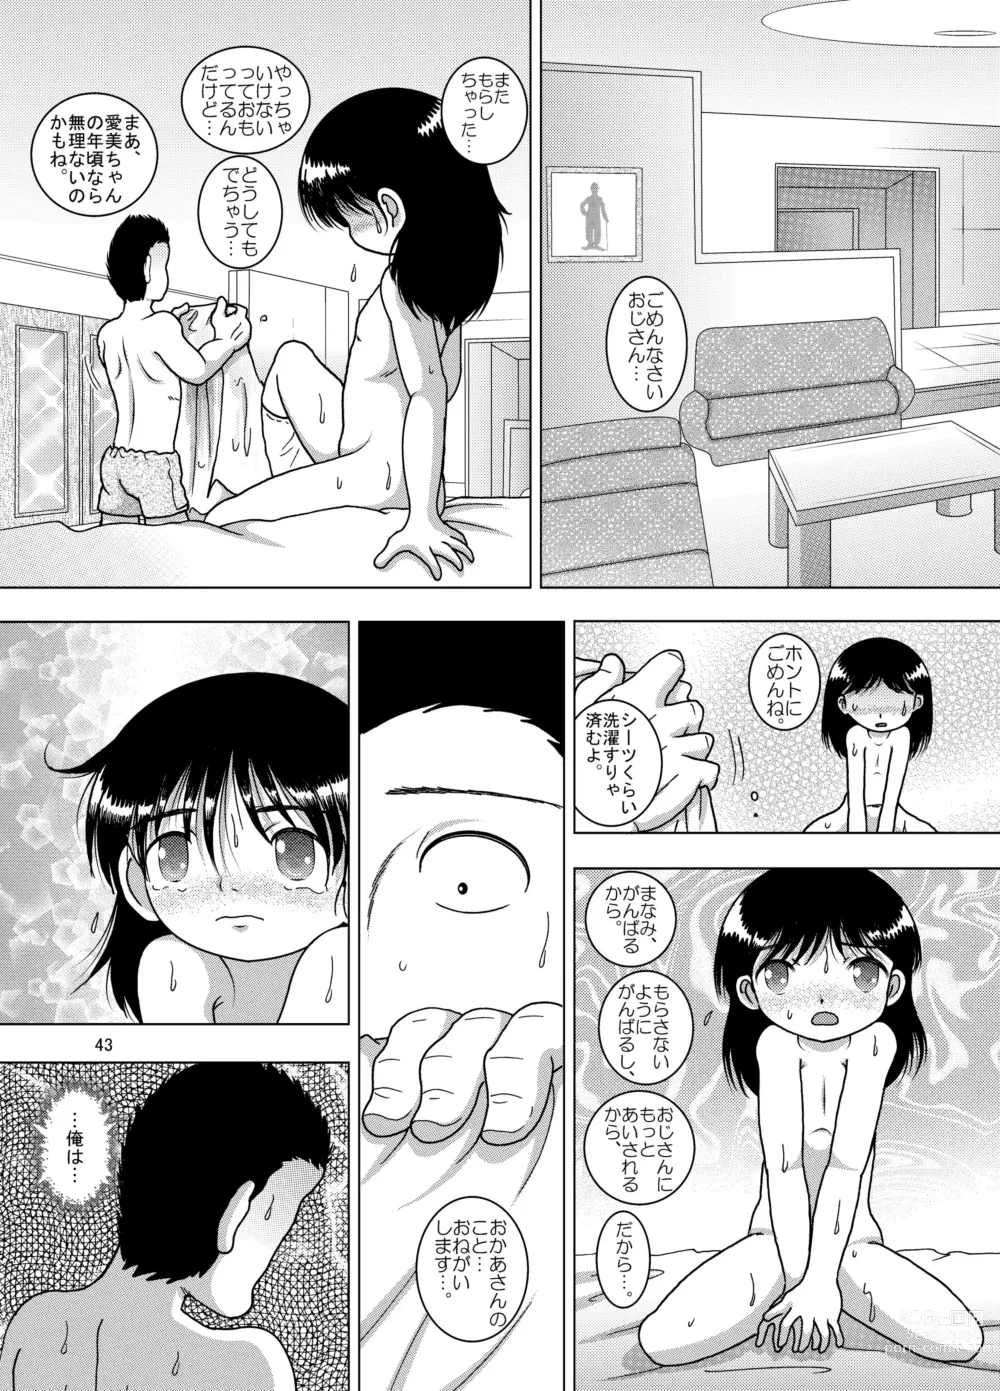 Page 43 of doujinshi Hoen Yokan